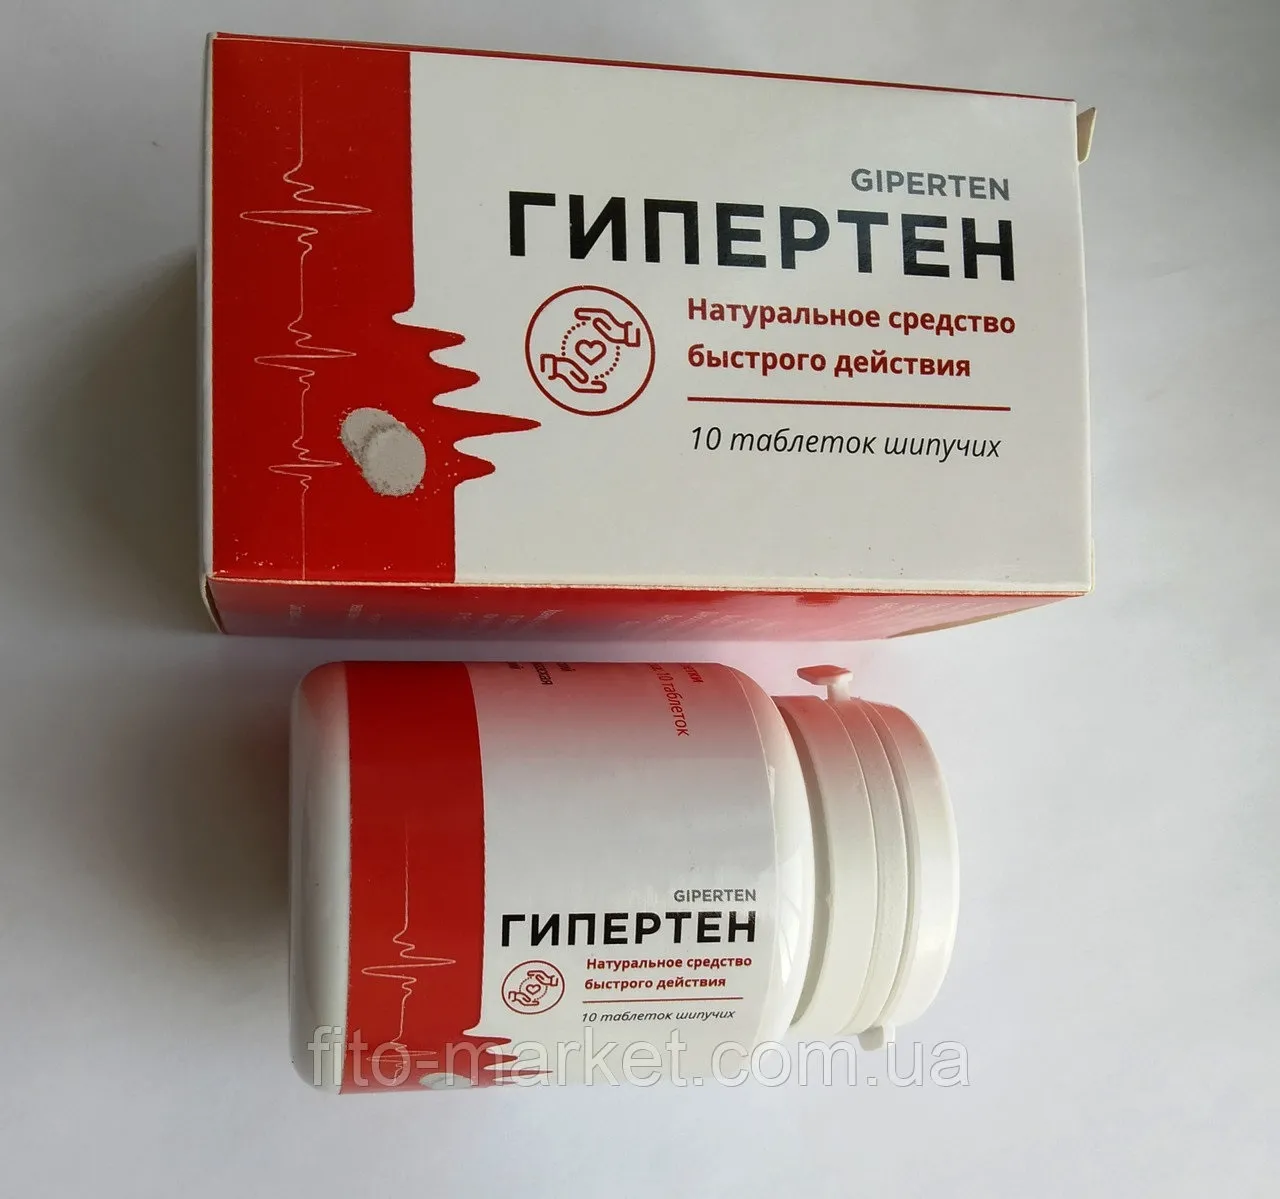 Tonerin производител - България - цена - отзиви - мнения - къде да купя - коментари - състав - в аптеките.